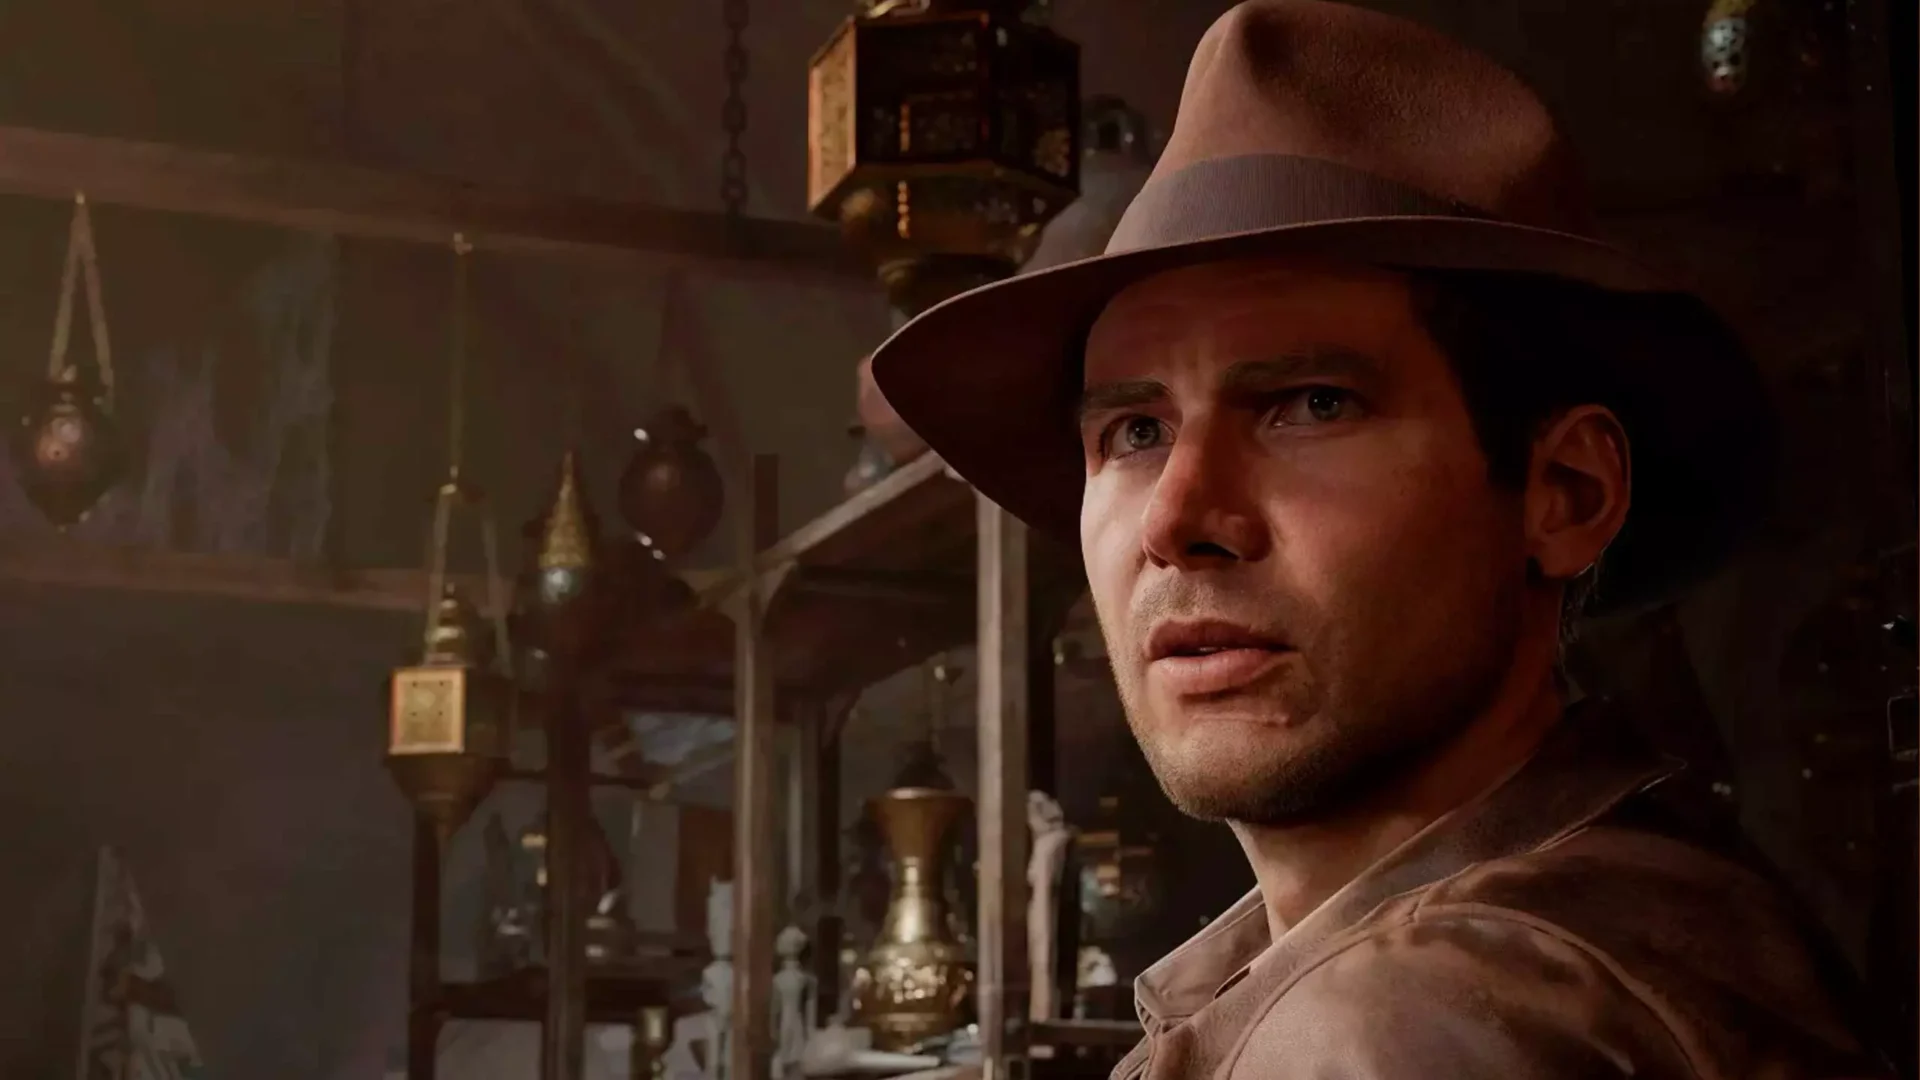 Indiana Jones e o Grande Círculo